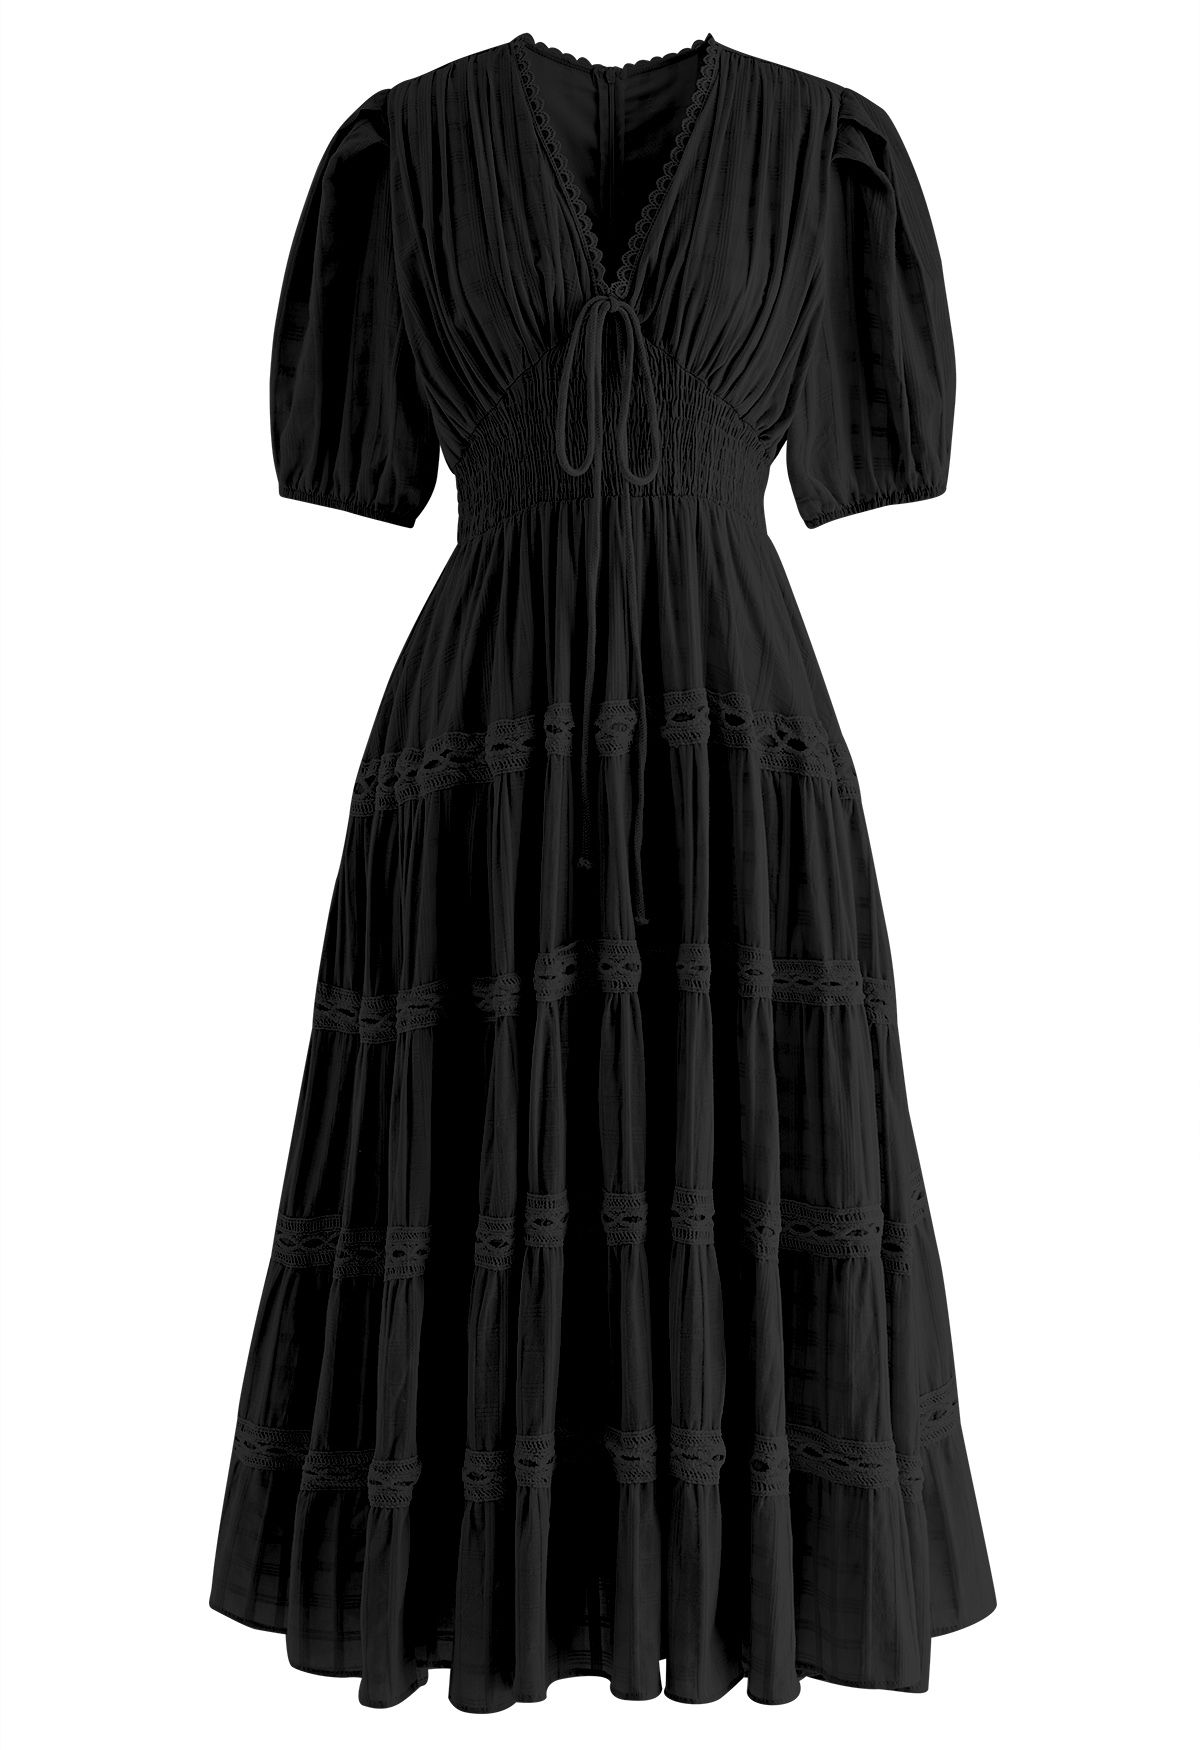 Scalloped V-Neck Checked Midi Dress in Black - Retro, Indie and Unique ...